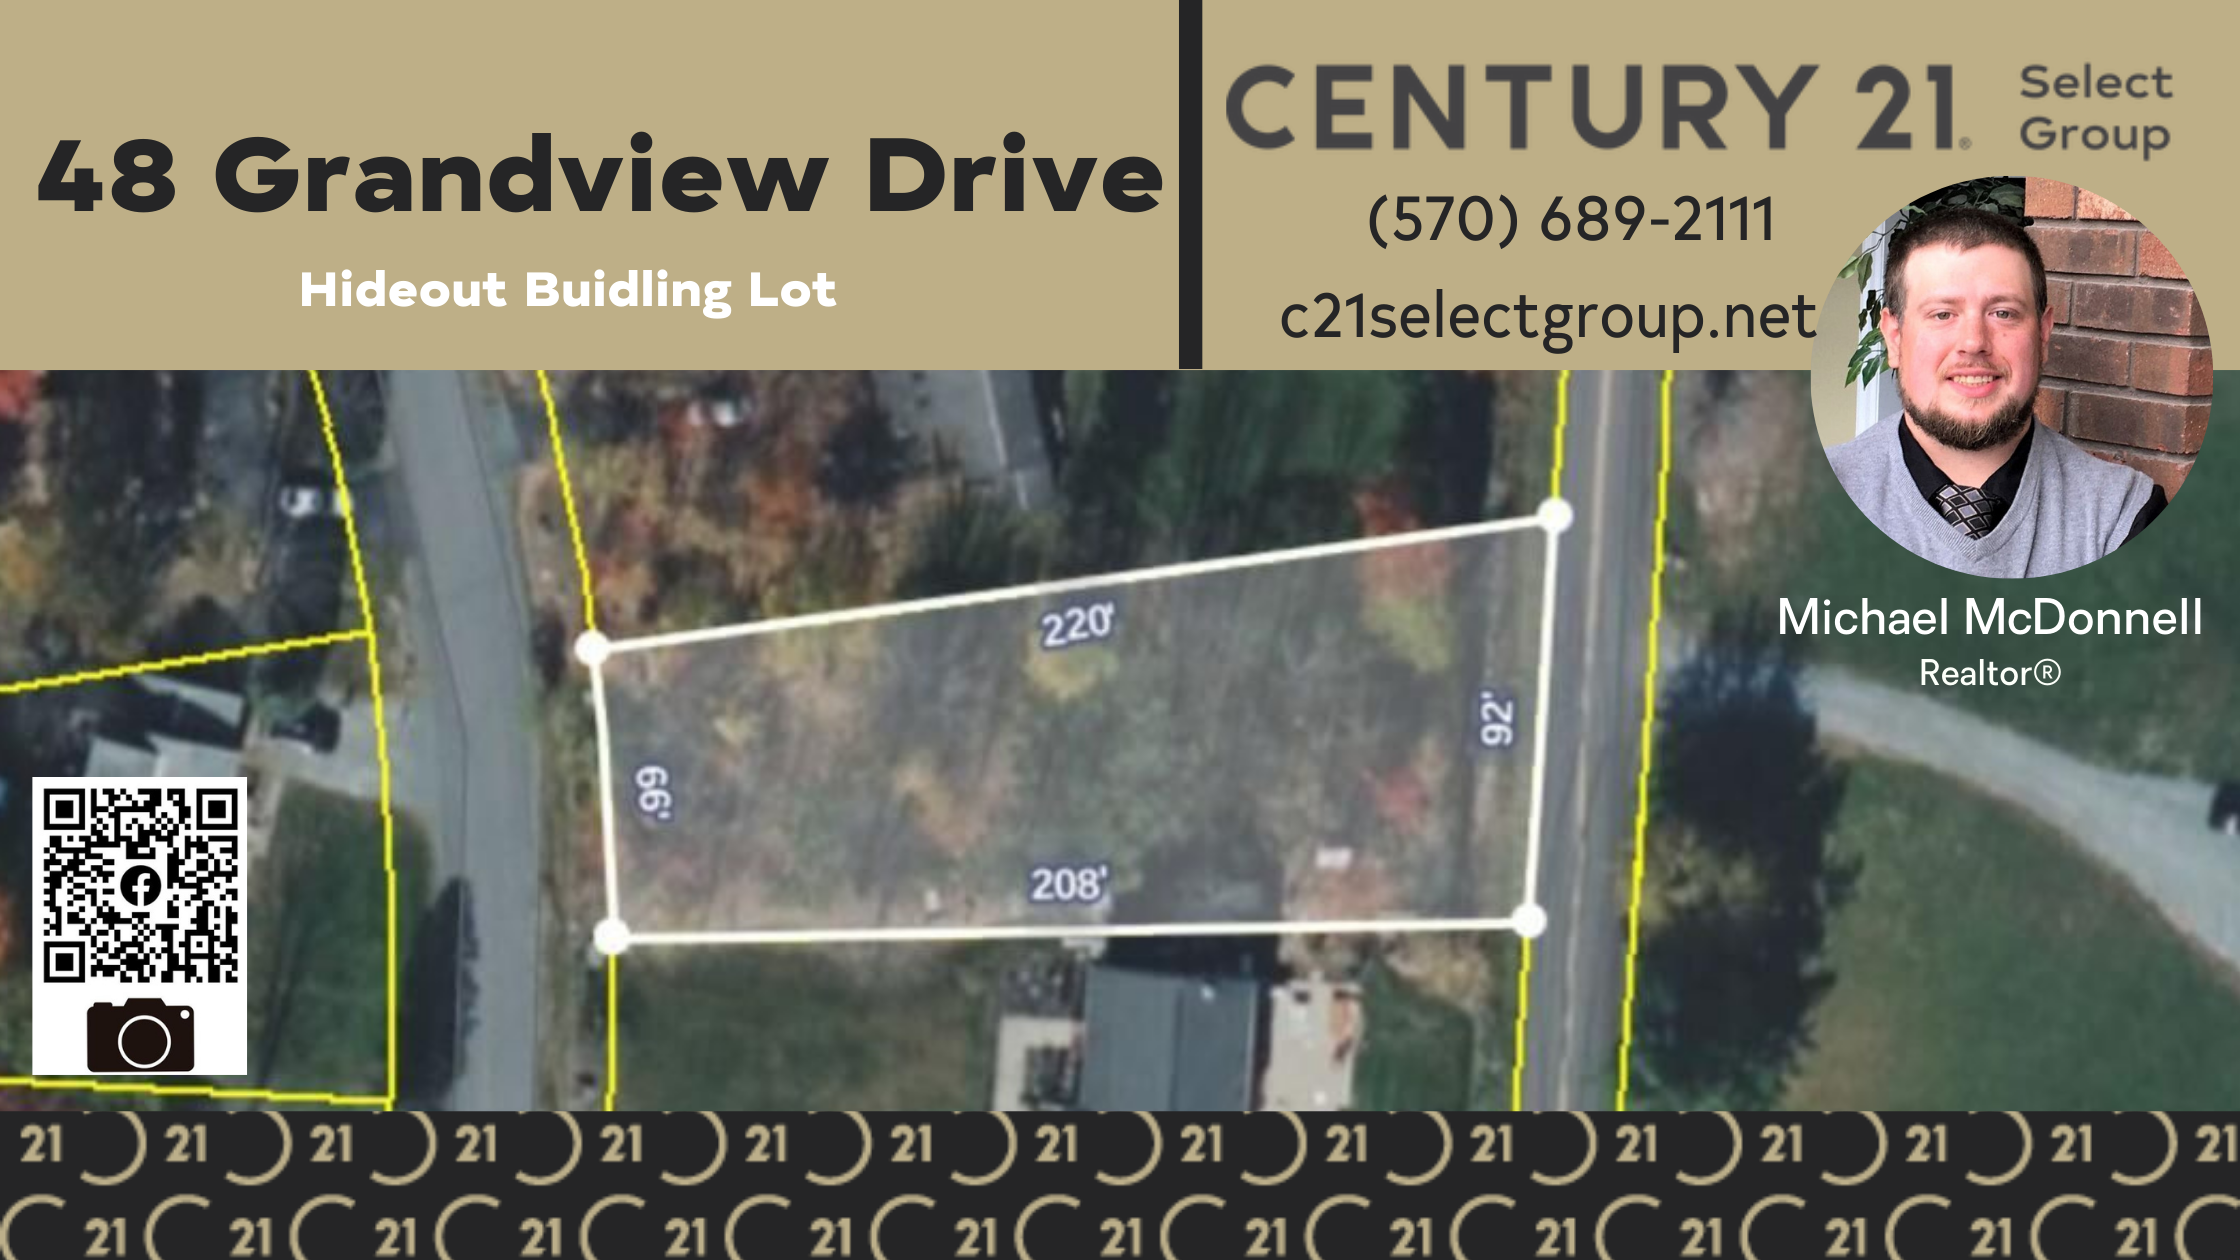 48 Grandview Drive: Hideout Community Building Lot